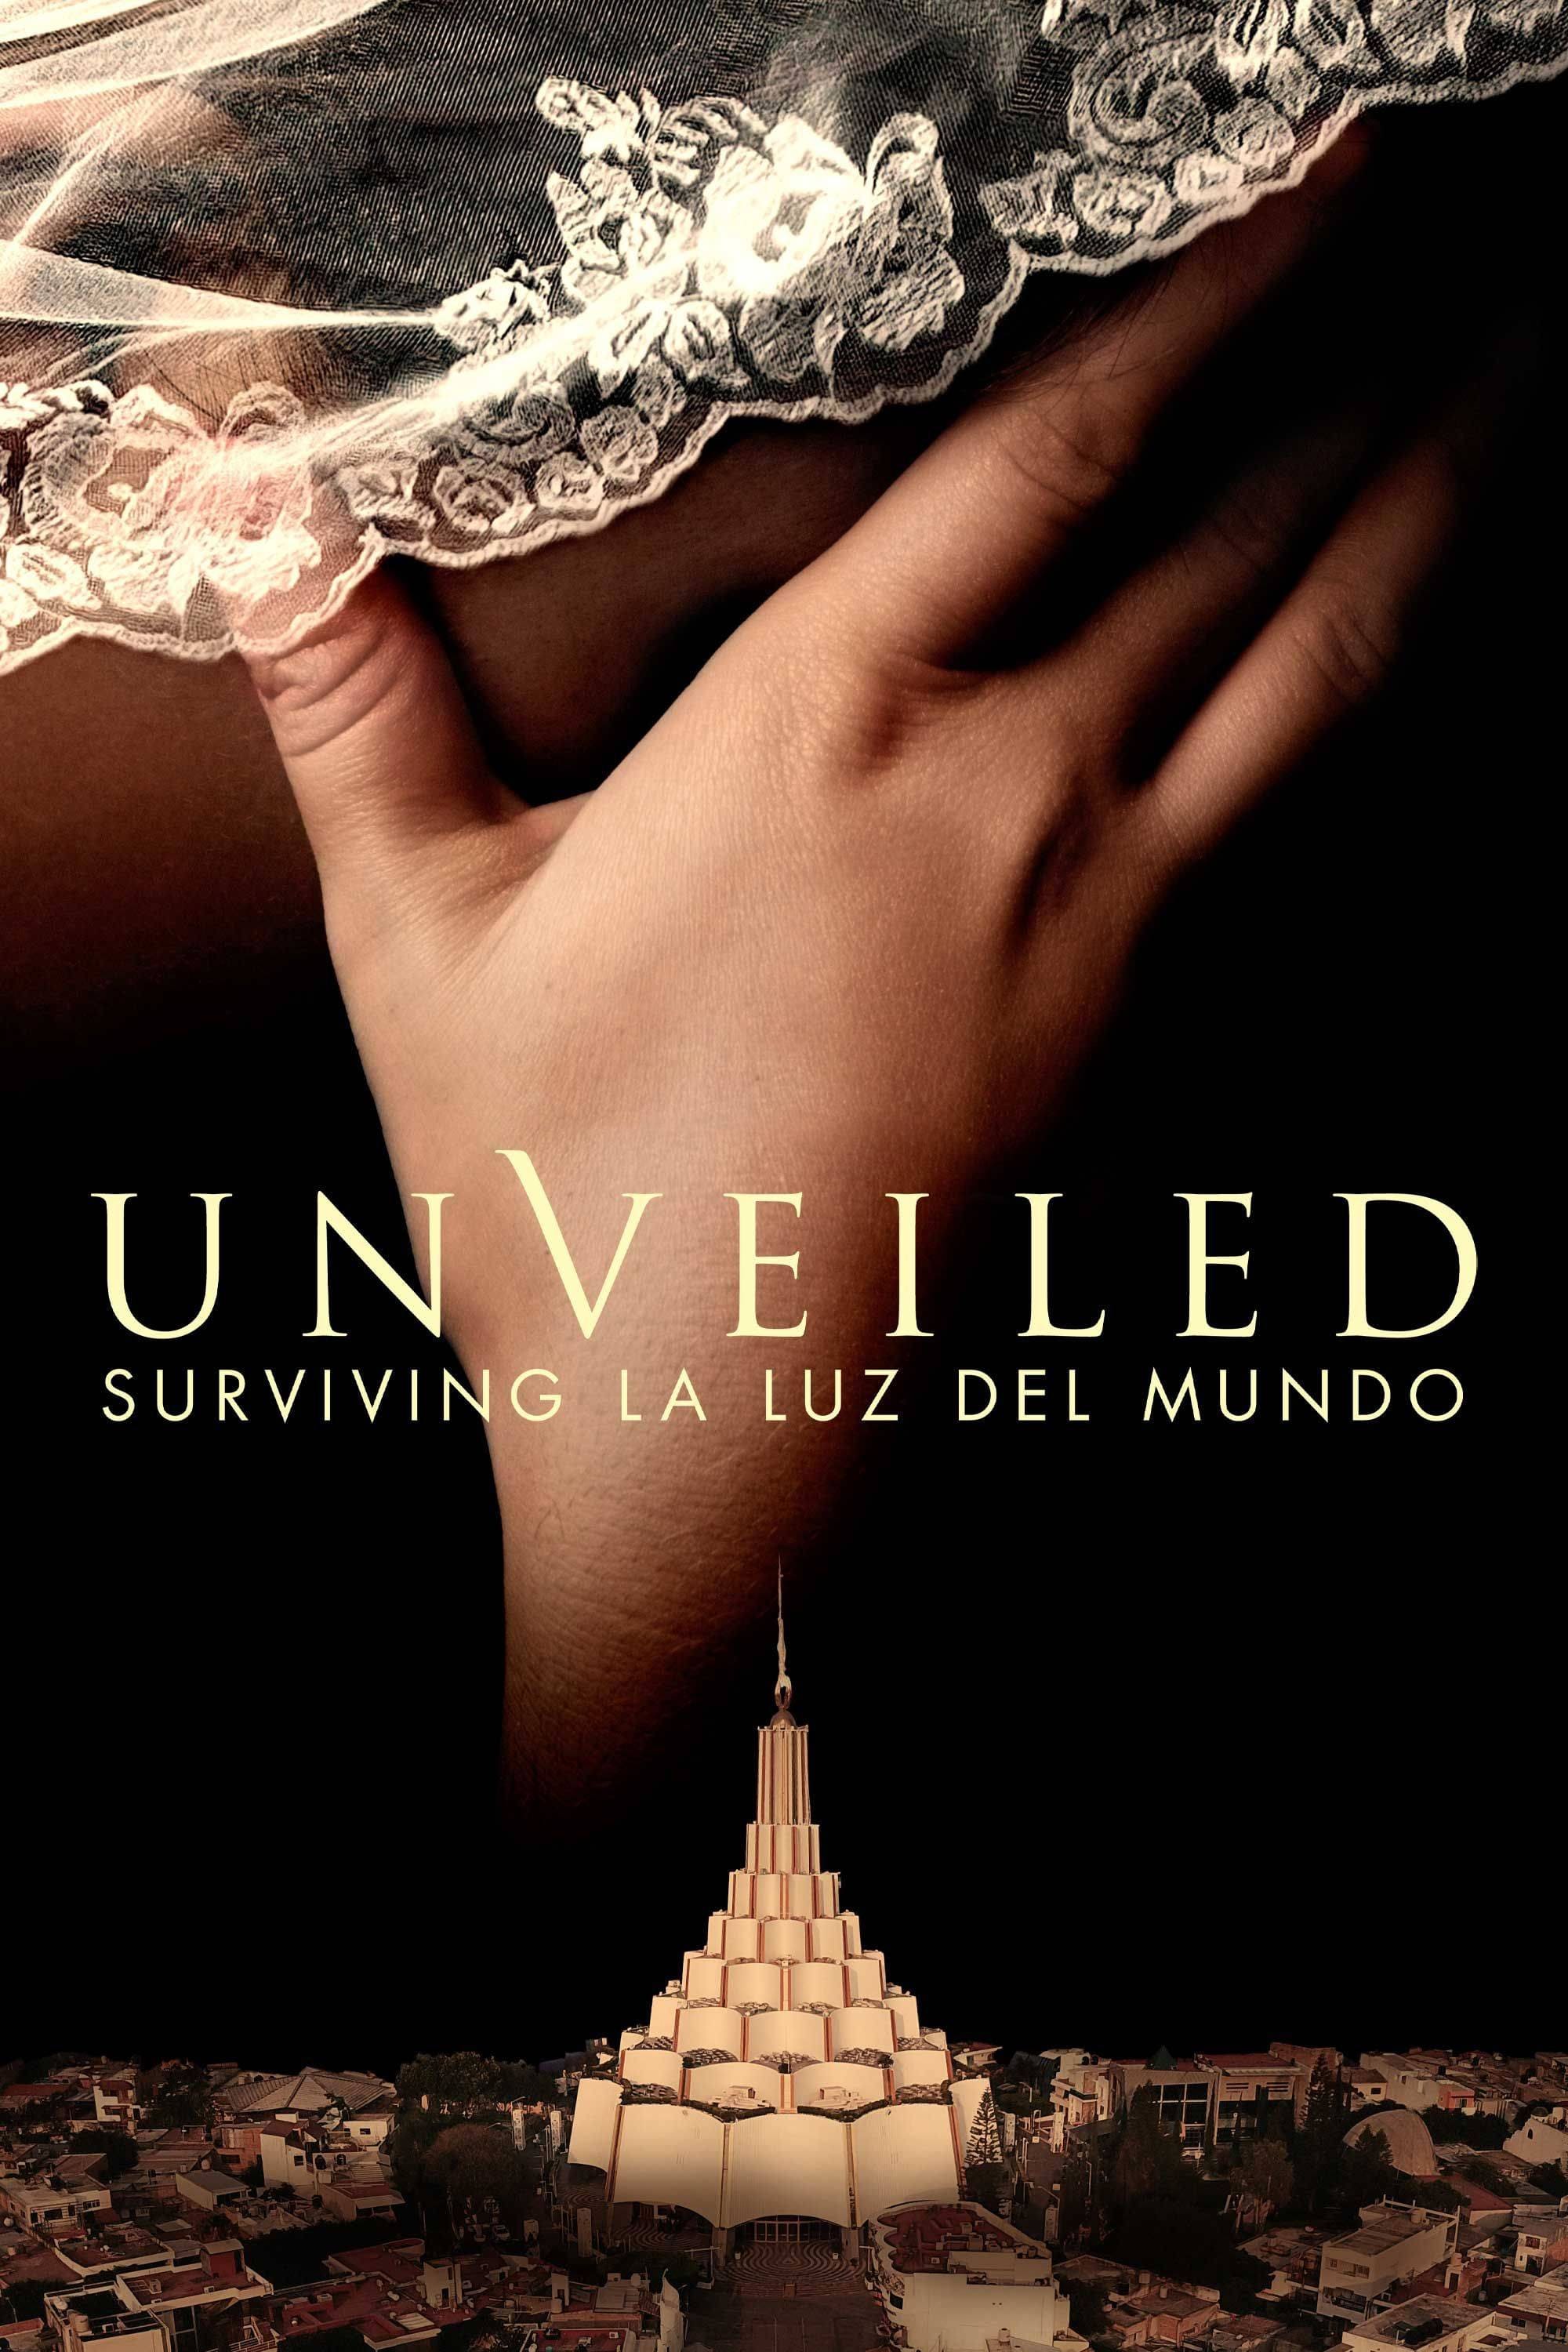 Unveiled: Surviving La Luz del Mundo TV Shows About True Crime